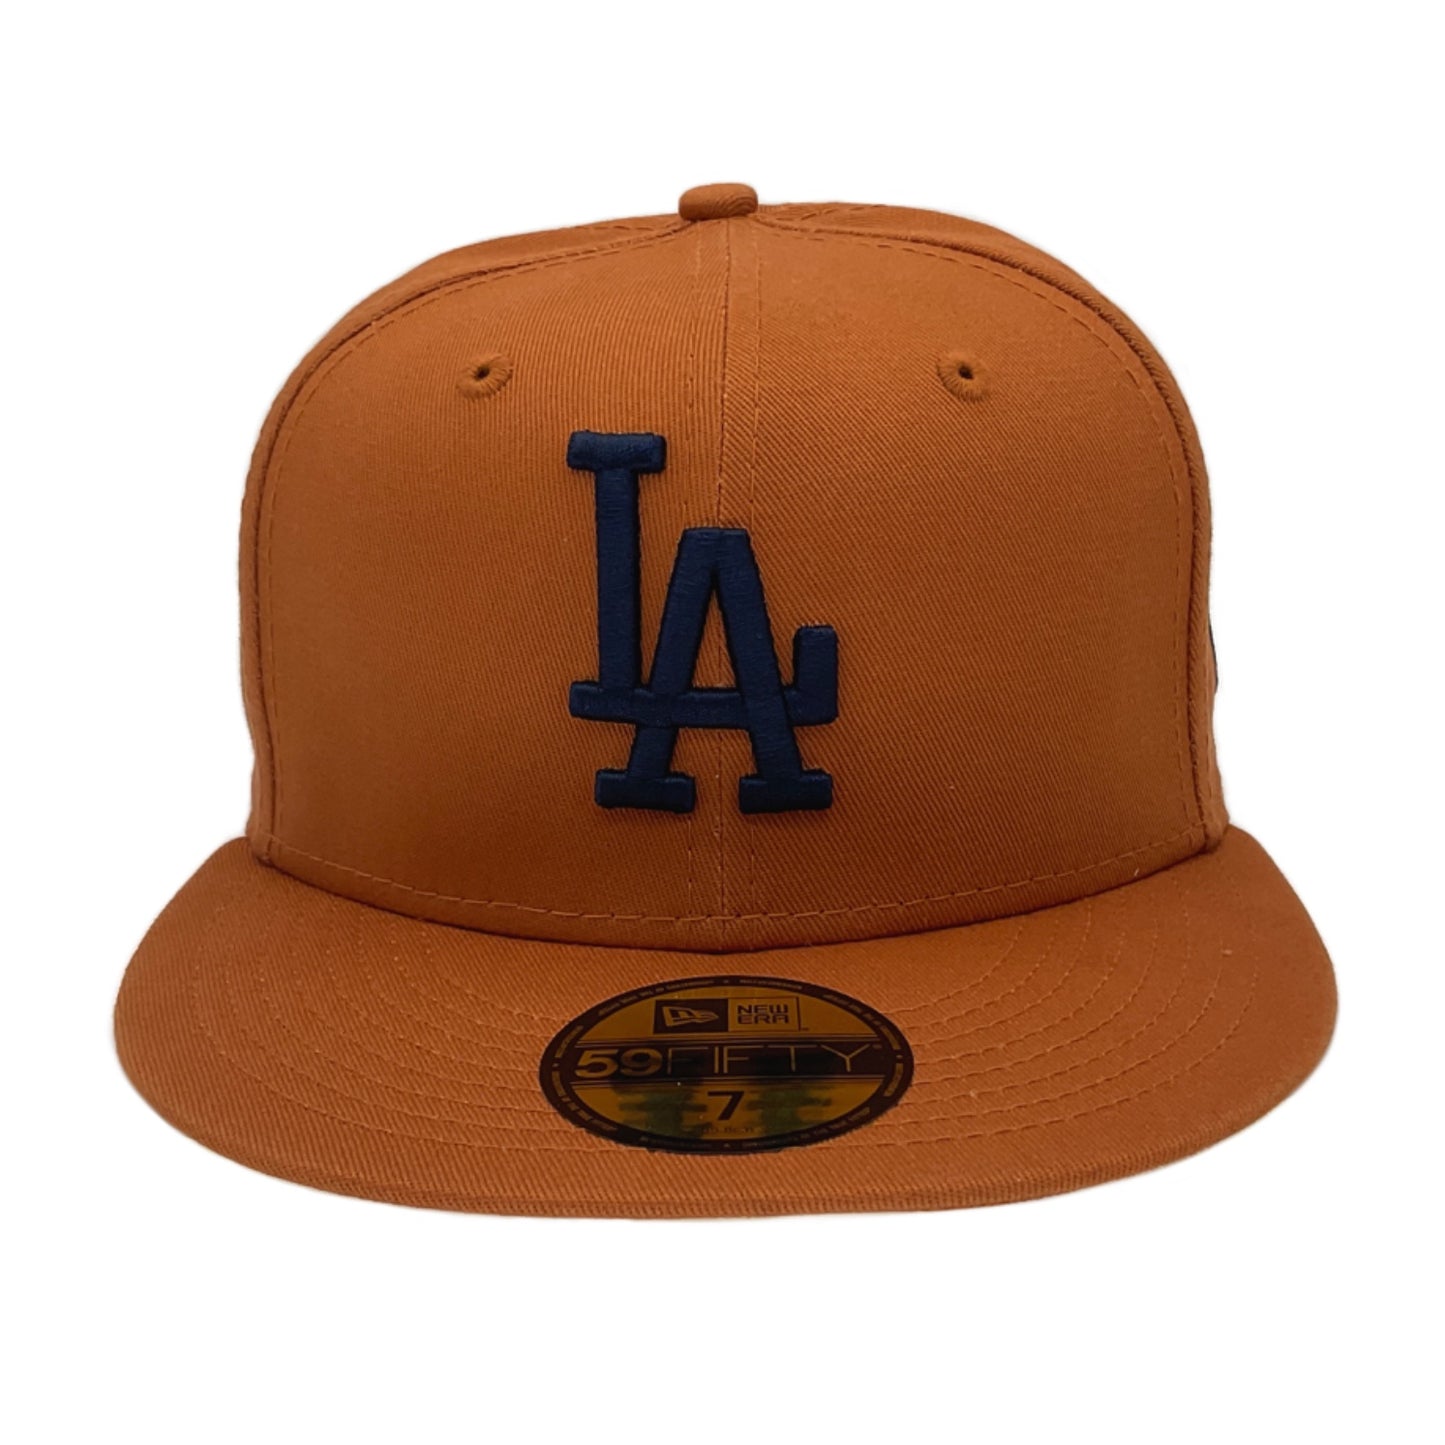 Los Angeles Dodgers New Era Cap Camel